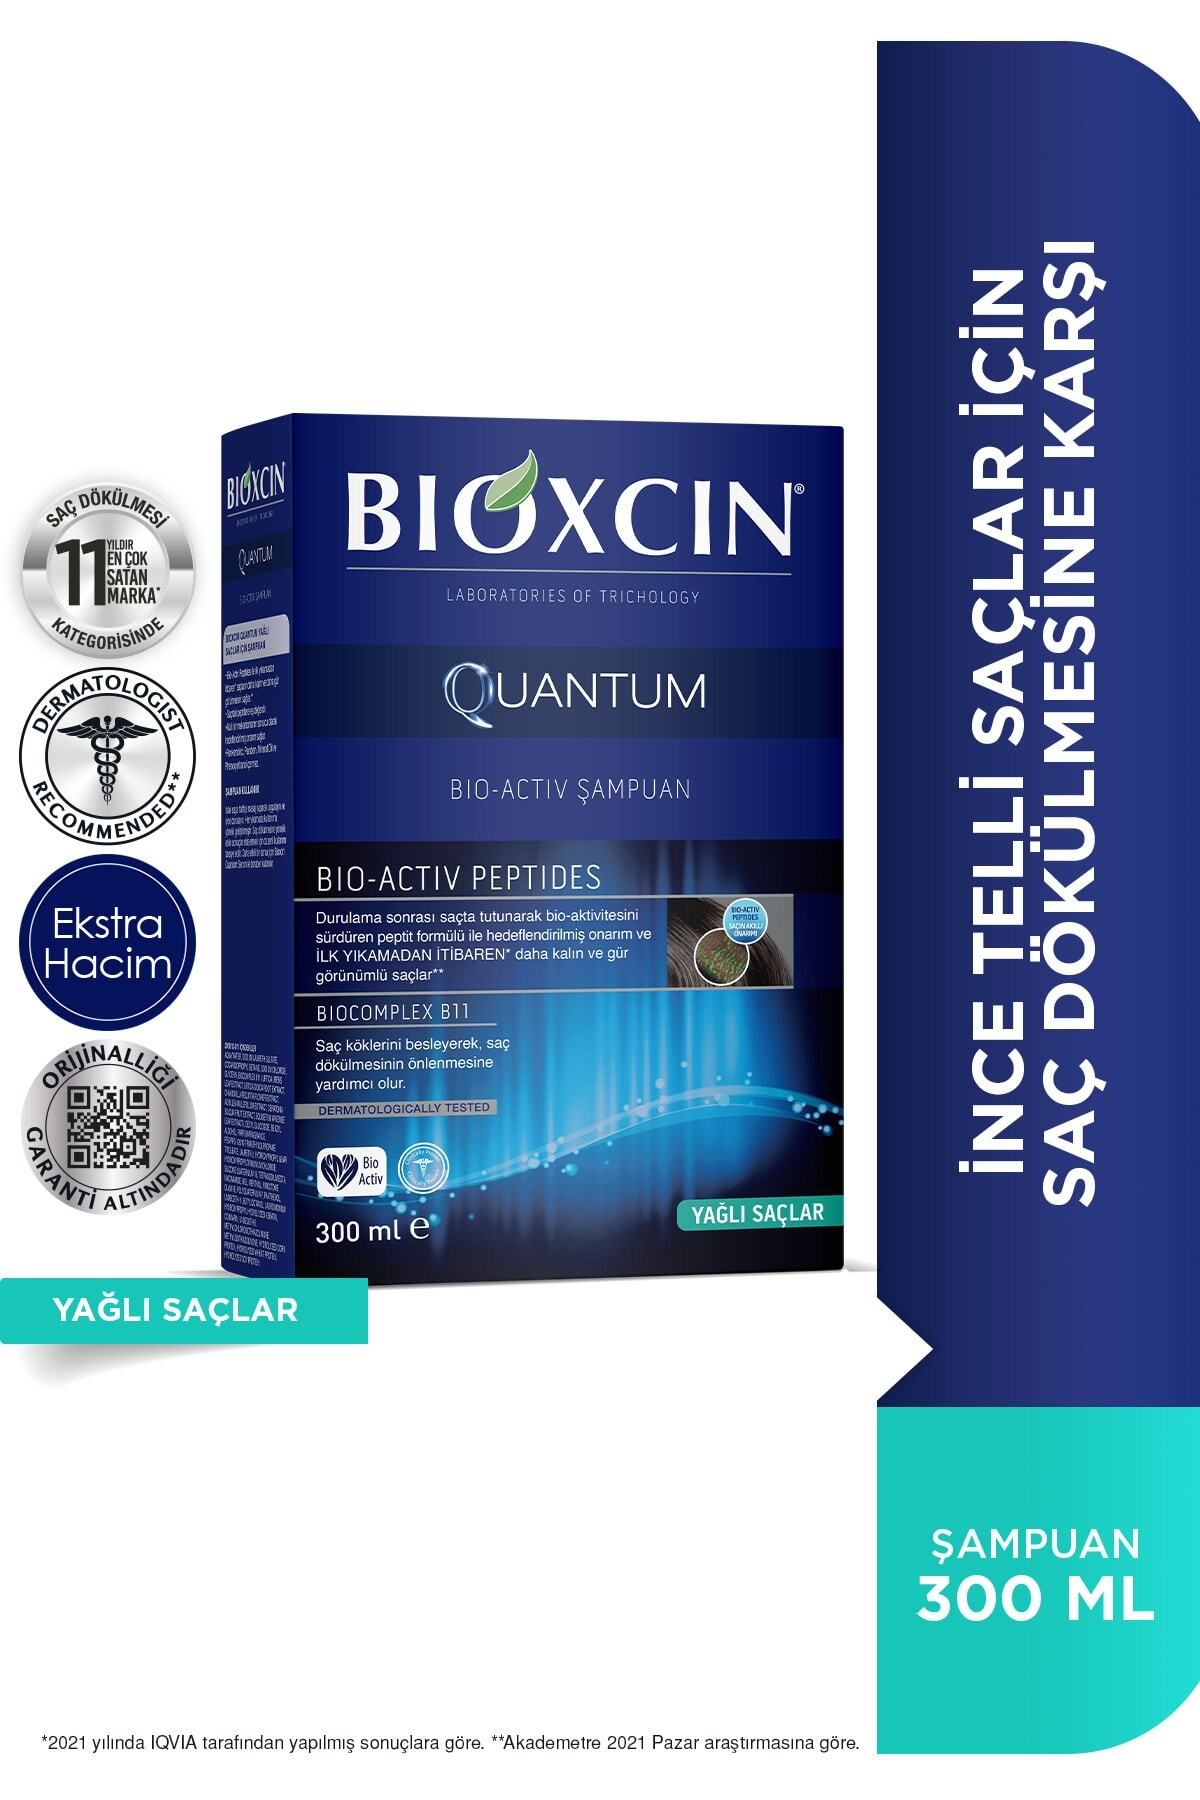 Bioxcin Quantum Yağlı Saçlar Için Şampuan 300ml